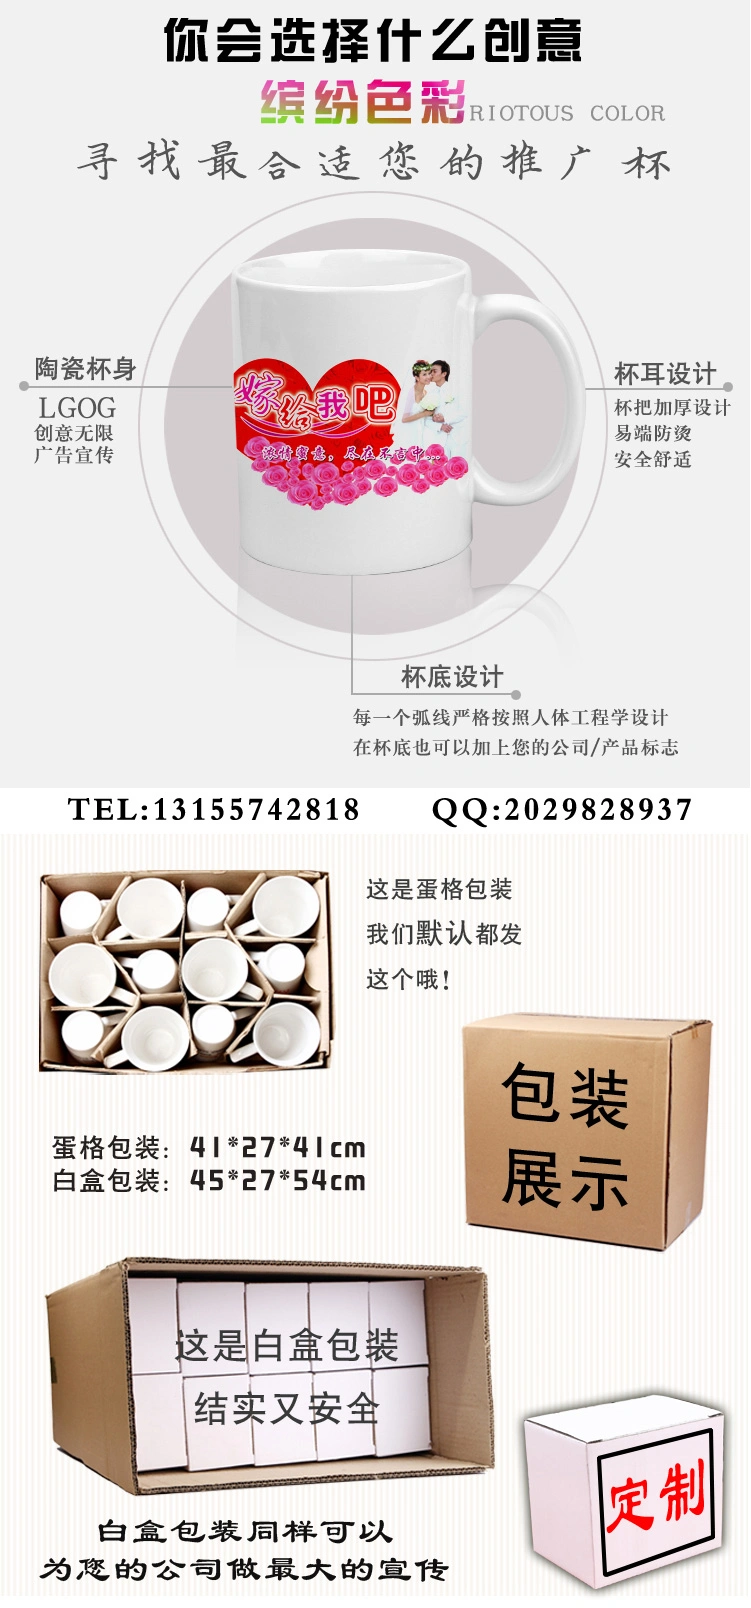 White Coating Mugs Heat Press Sublimation Mugs 11 Oz 12ozcoffee Mug 330 Ml